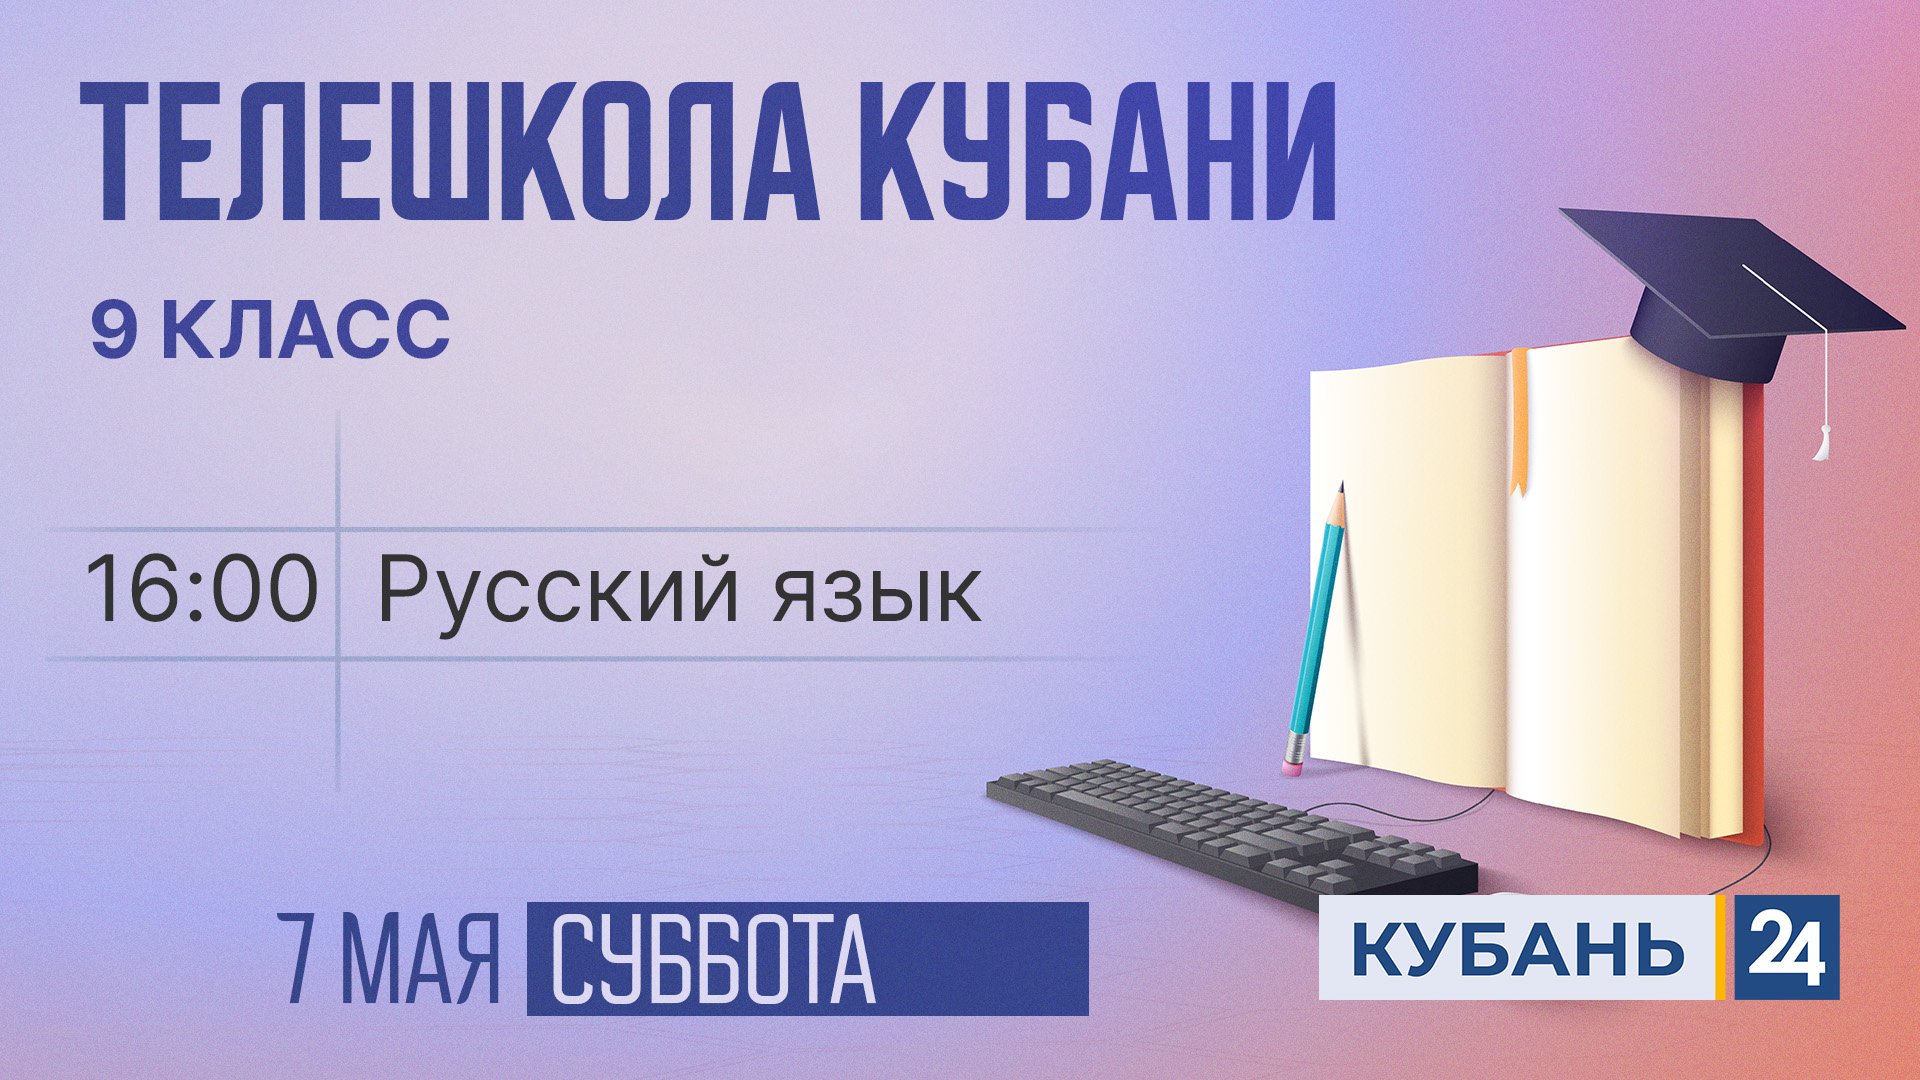 Русский язык. 9 класс | Телешкола Кубани 07.05.2022